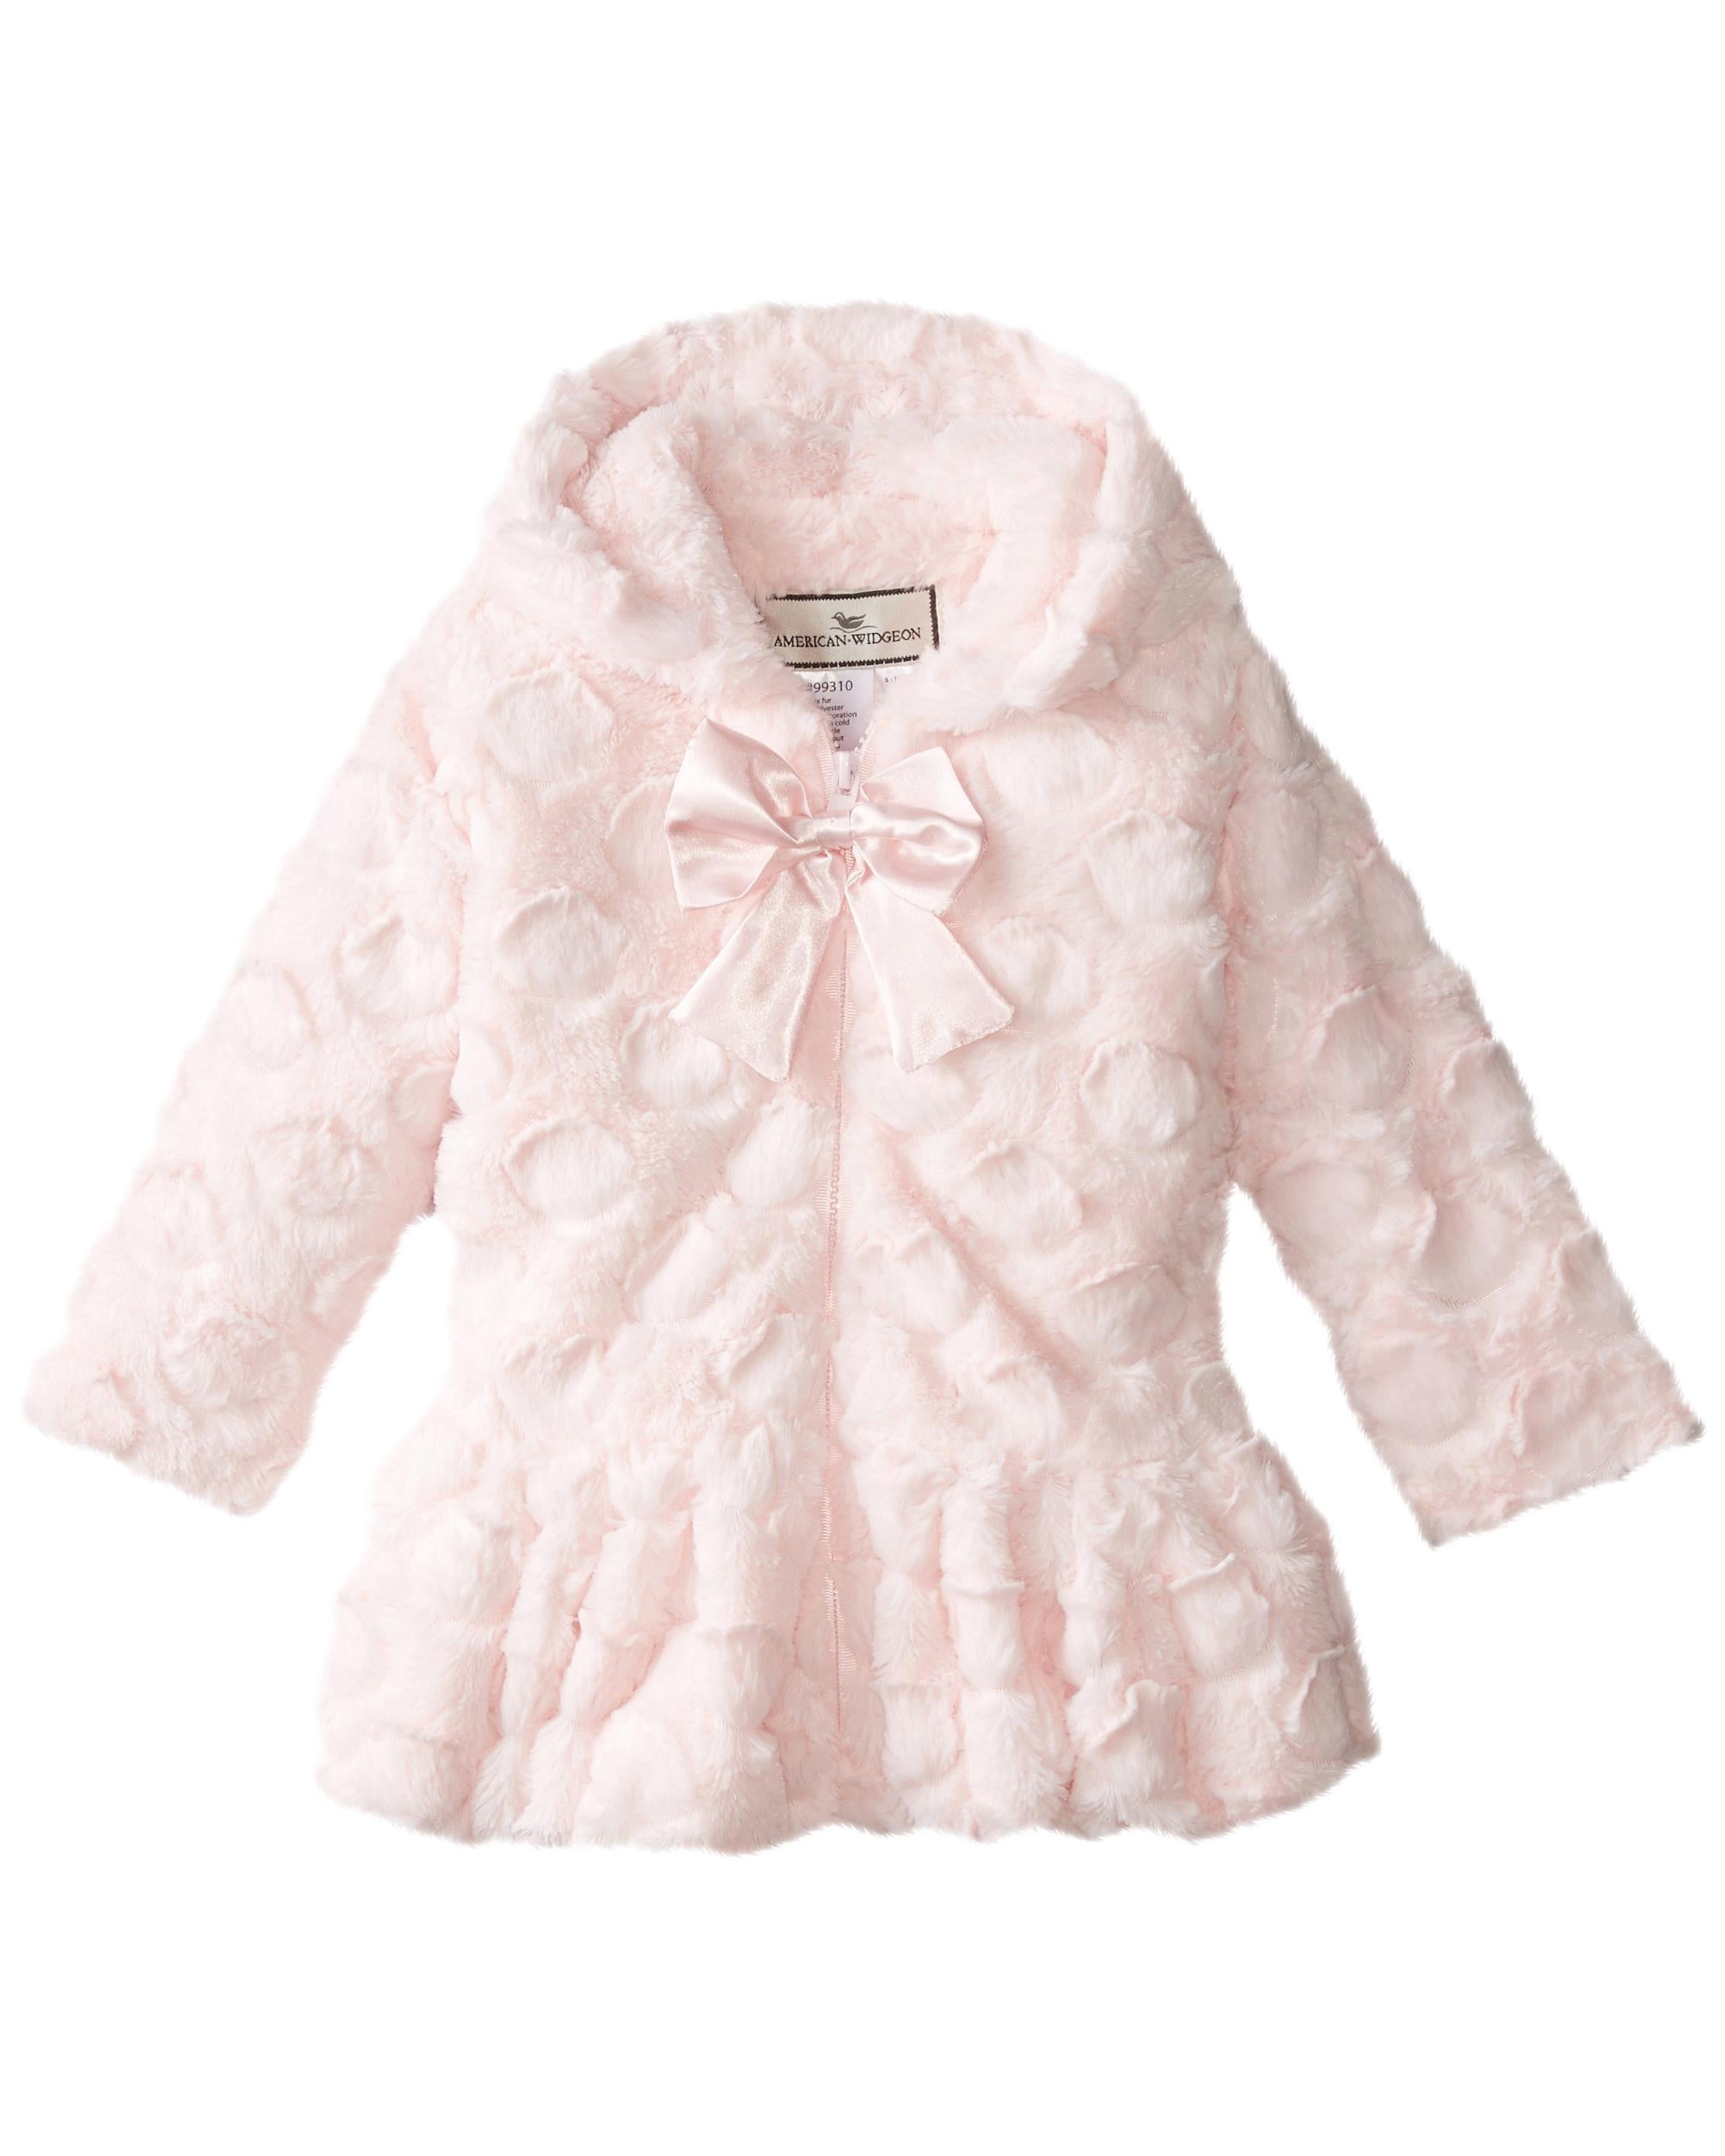 Widgeon Baby Girls Faux Fur Jacket - Diamond Pink Baby 18 Months